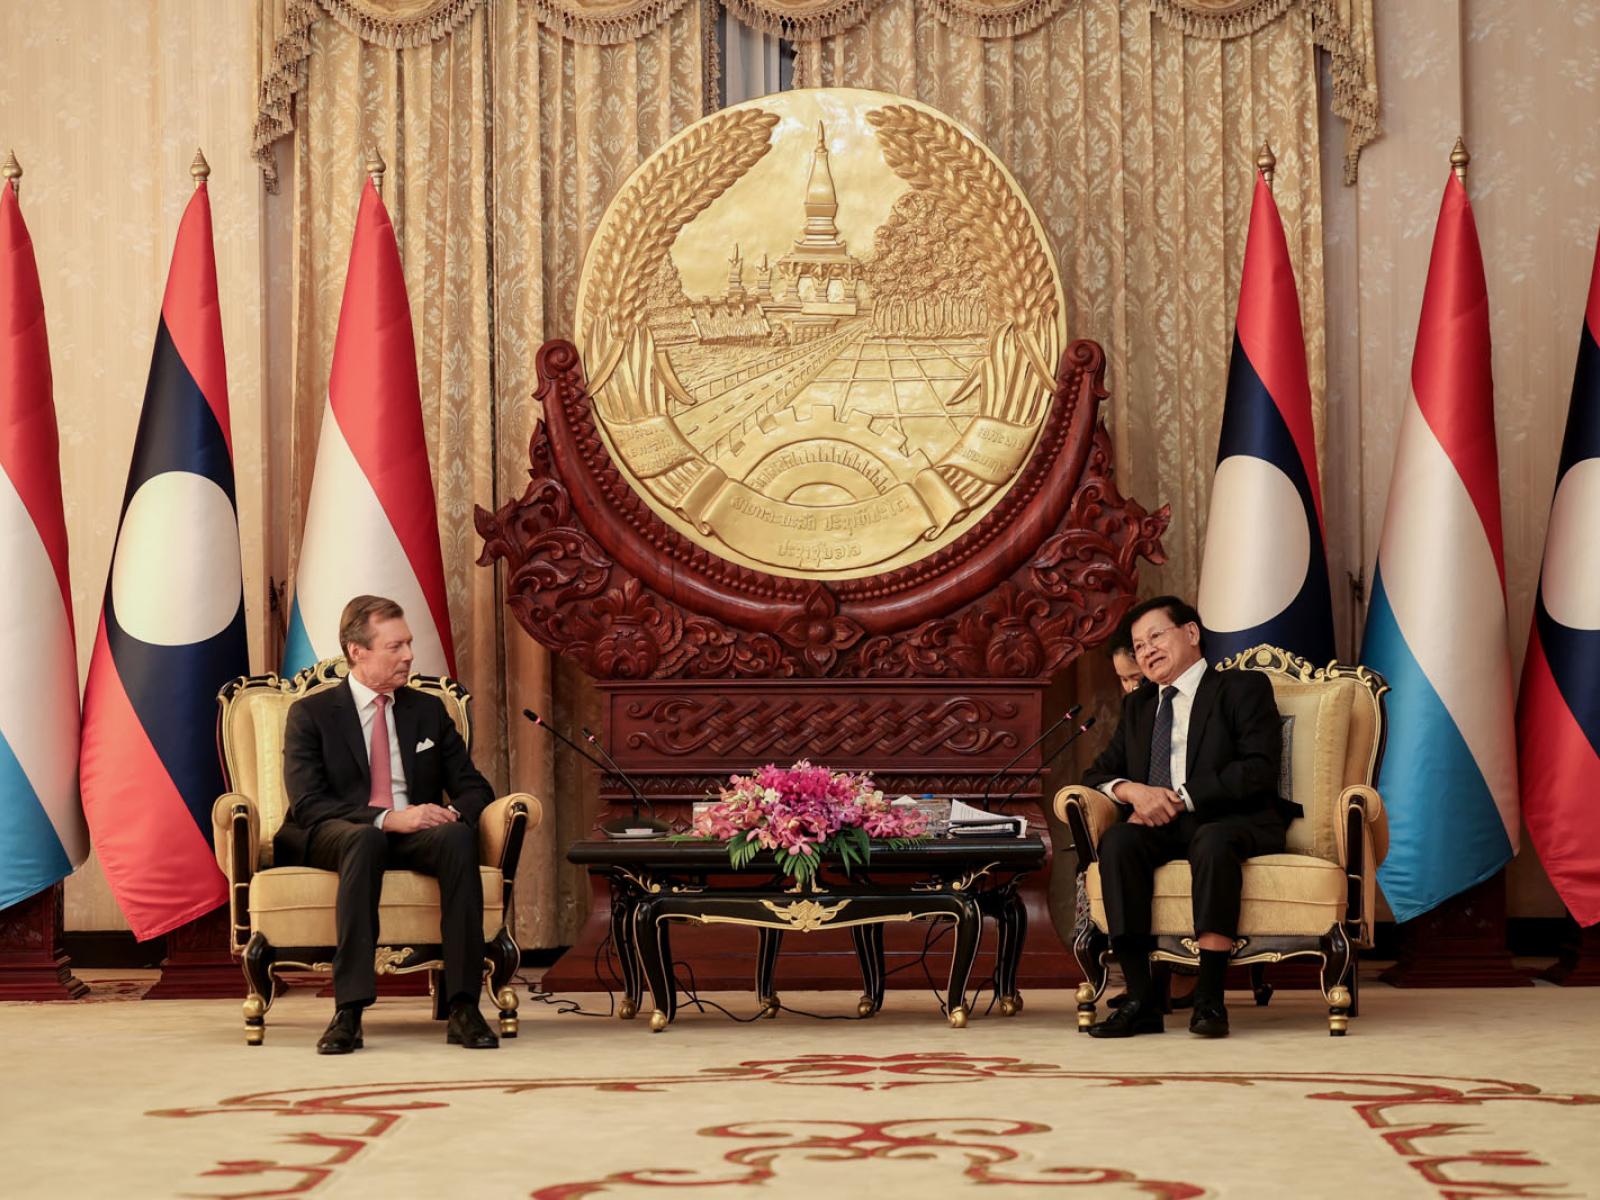 Le Grand-Duc et le Président lors de la réunion bilatérale